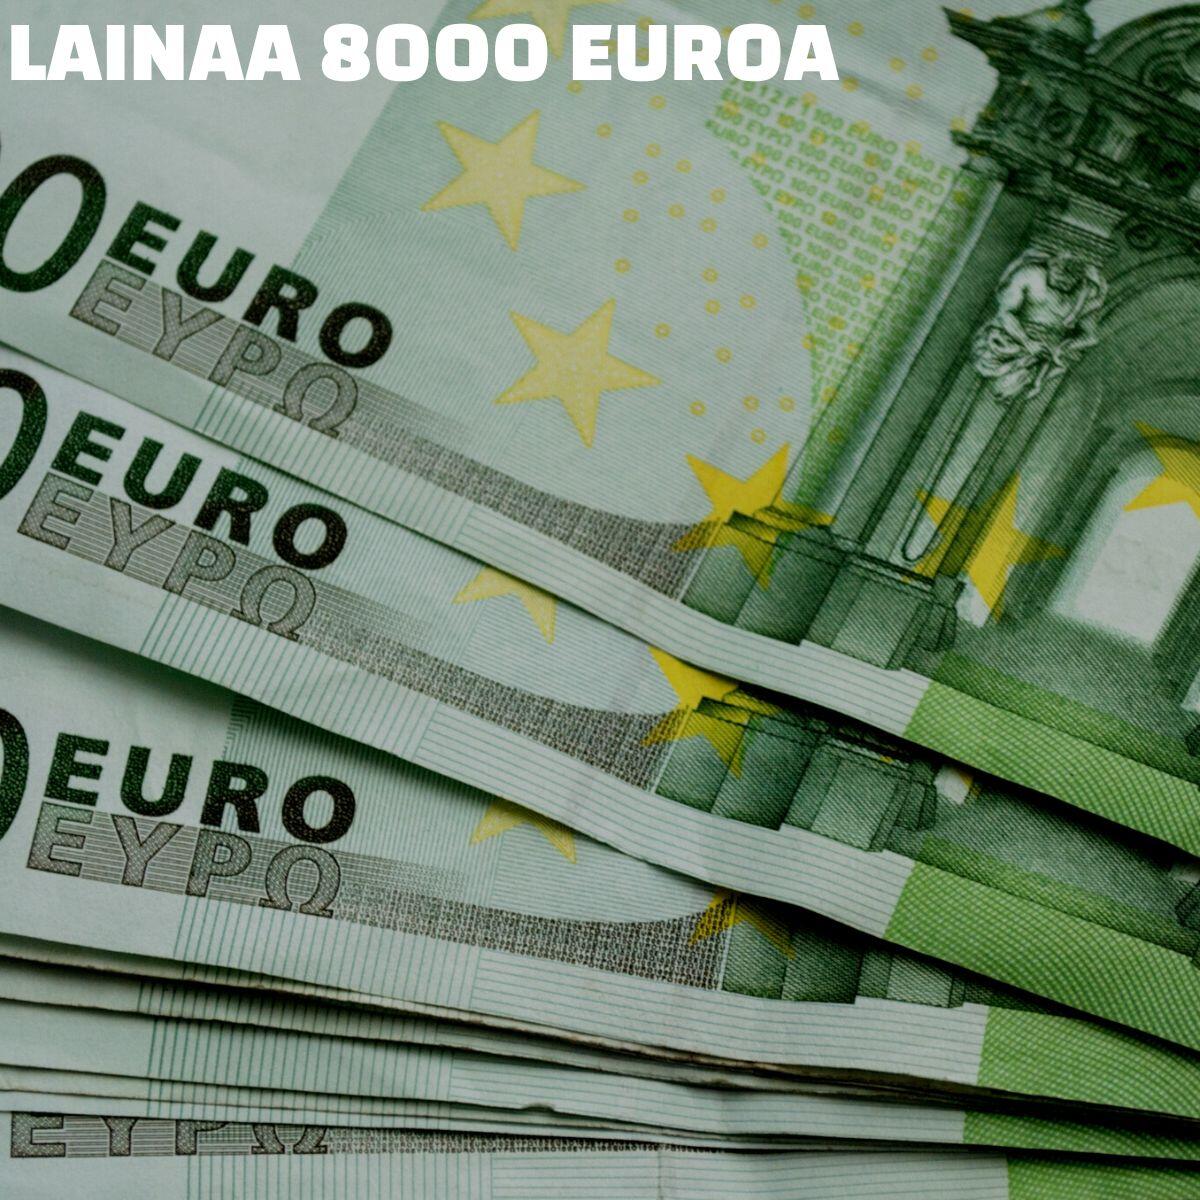 lainaa 8000 euroa